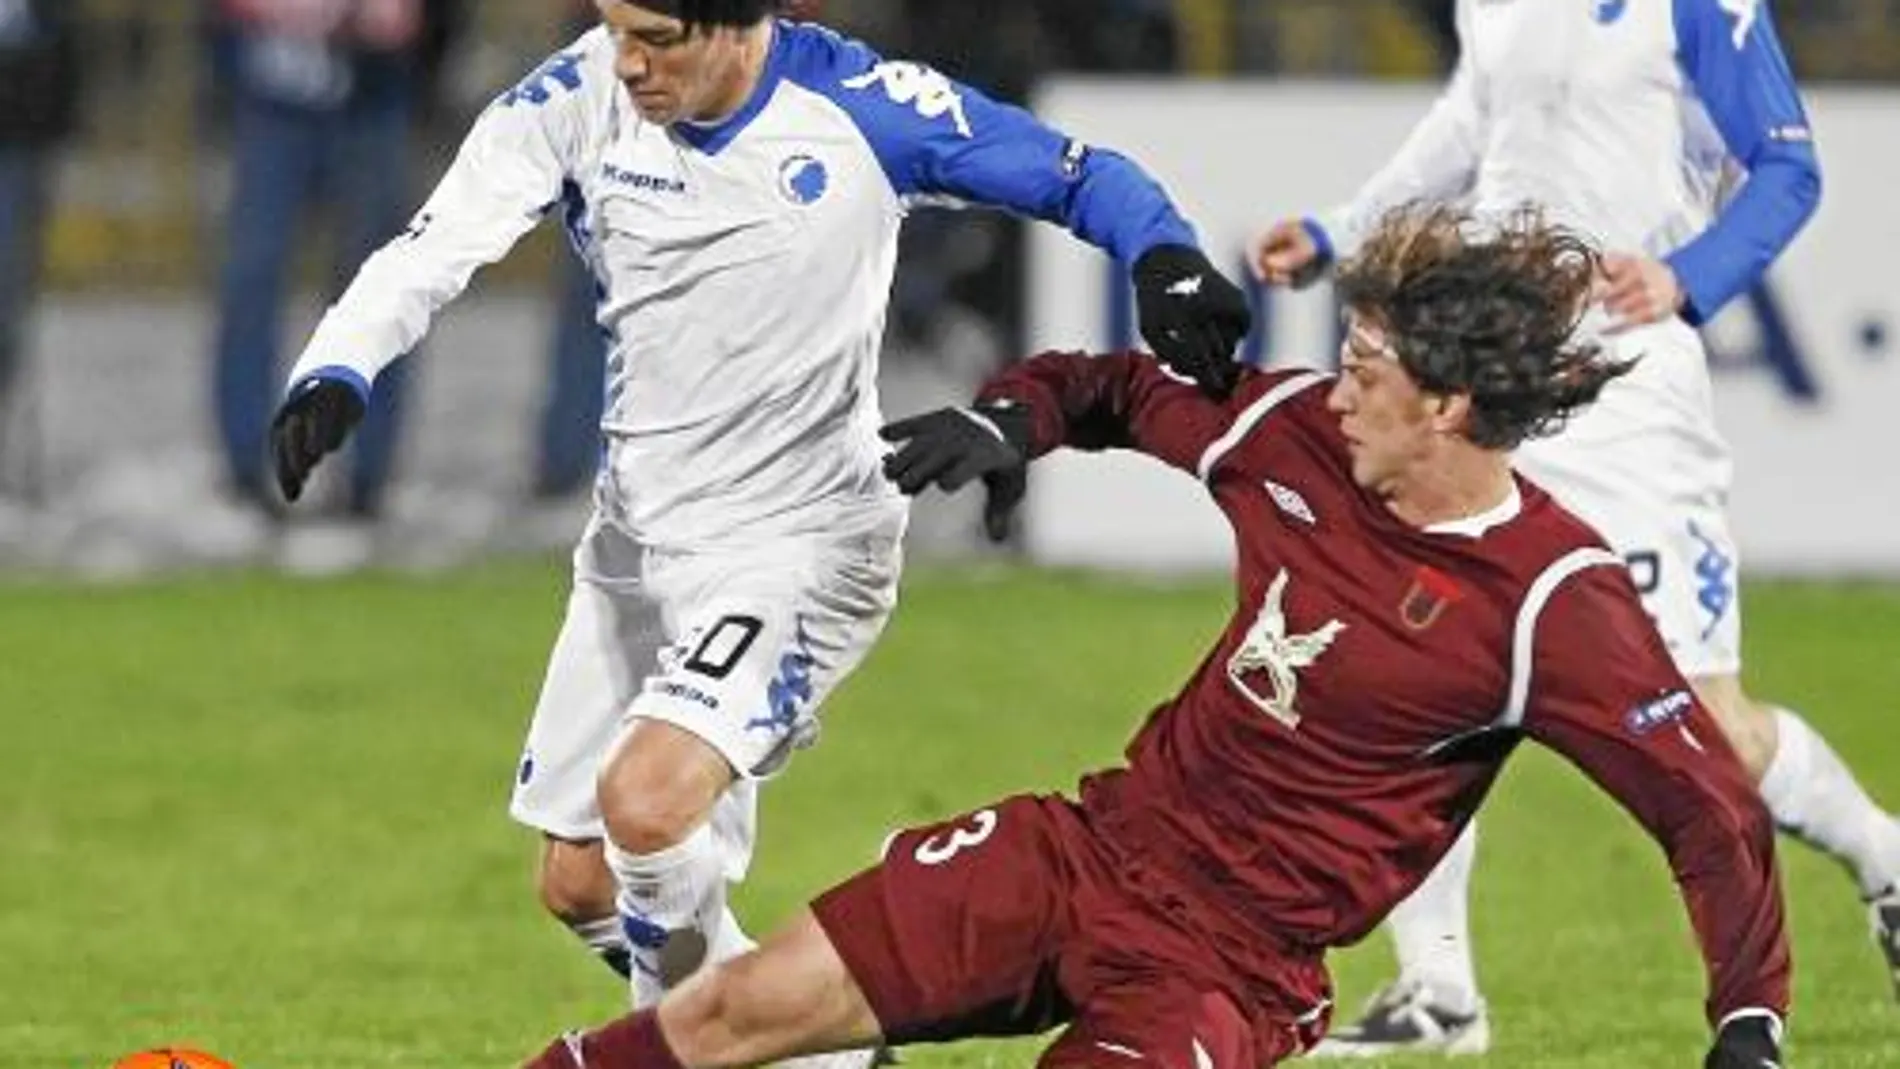 Bolaños pelea un balón en el partido disputado ayer entre el Rubin Kazan y el Copenhague, en el que el equipo ruso venció 1-0 de penalti